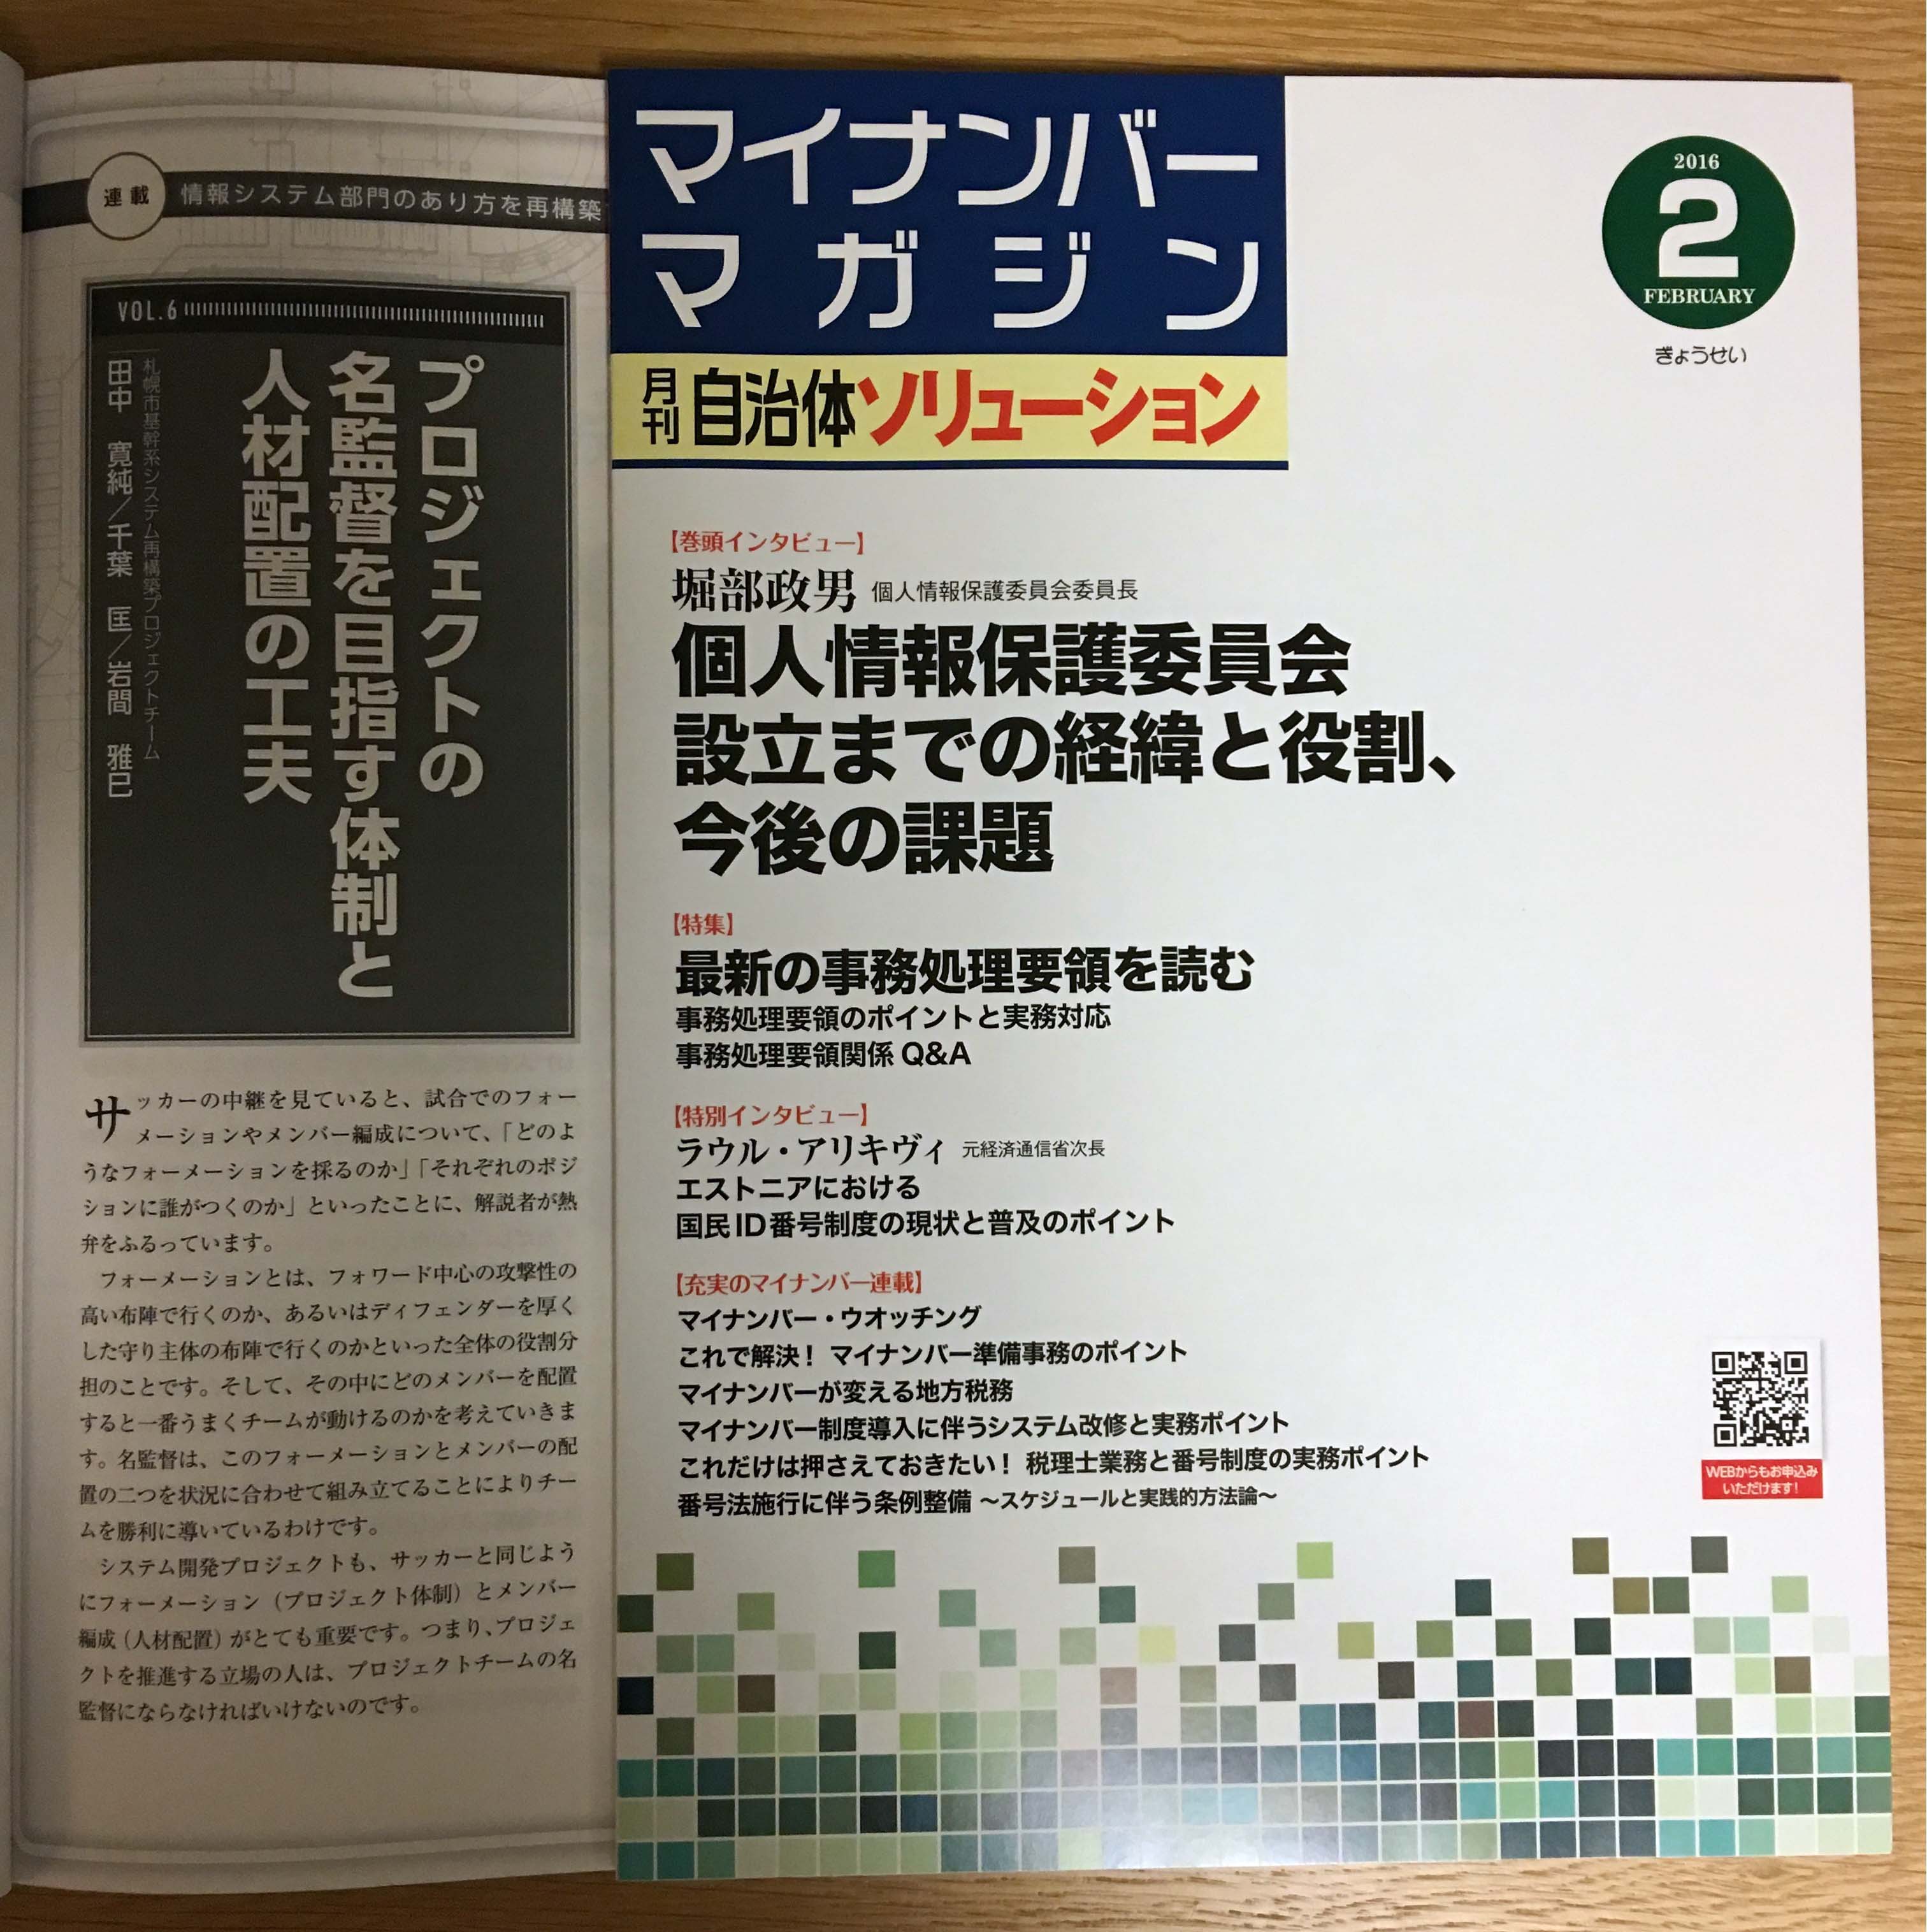 自治体ソリューション2月号が発刊されました。